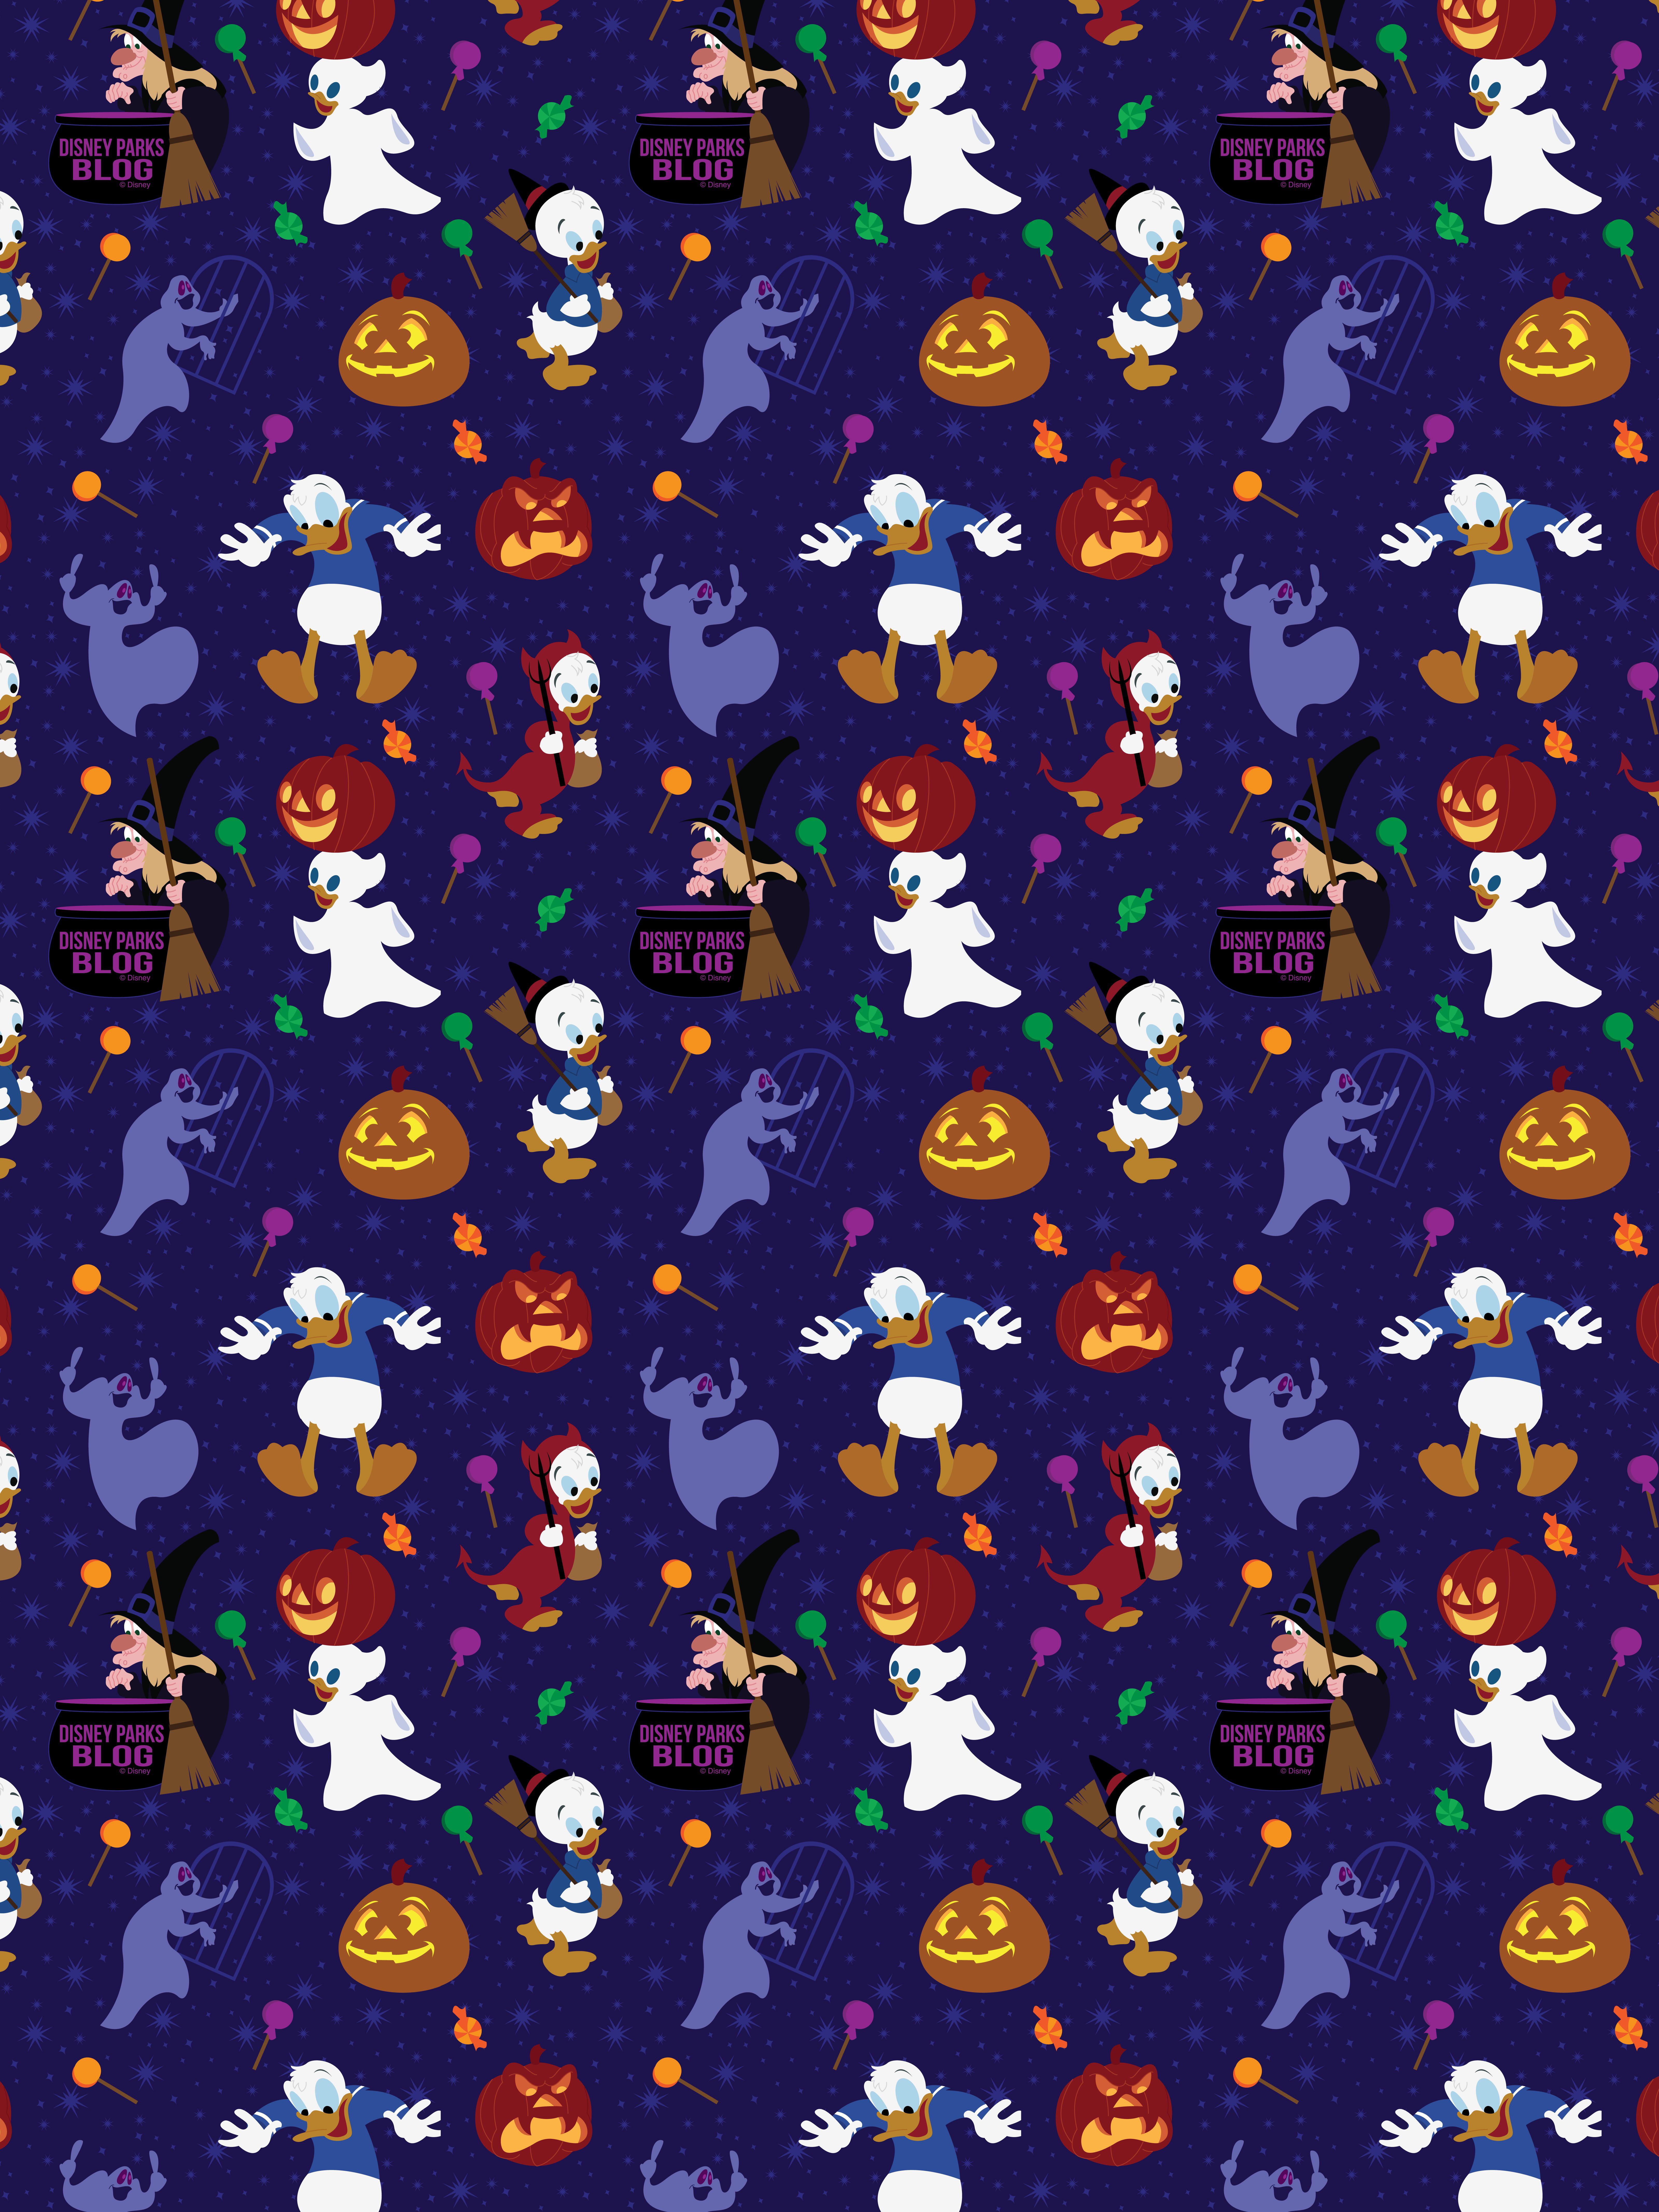 77 Disney Halloween Wallpaper Backgrounds  WallpaperSafari